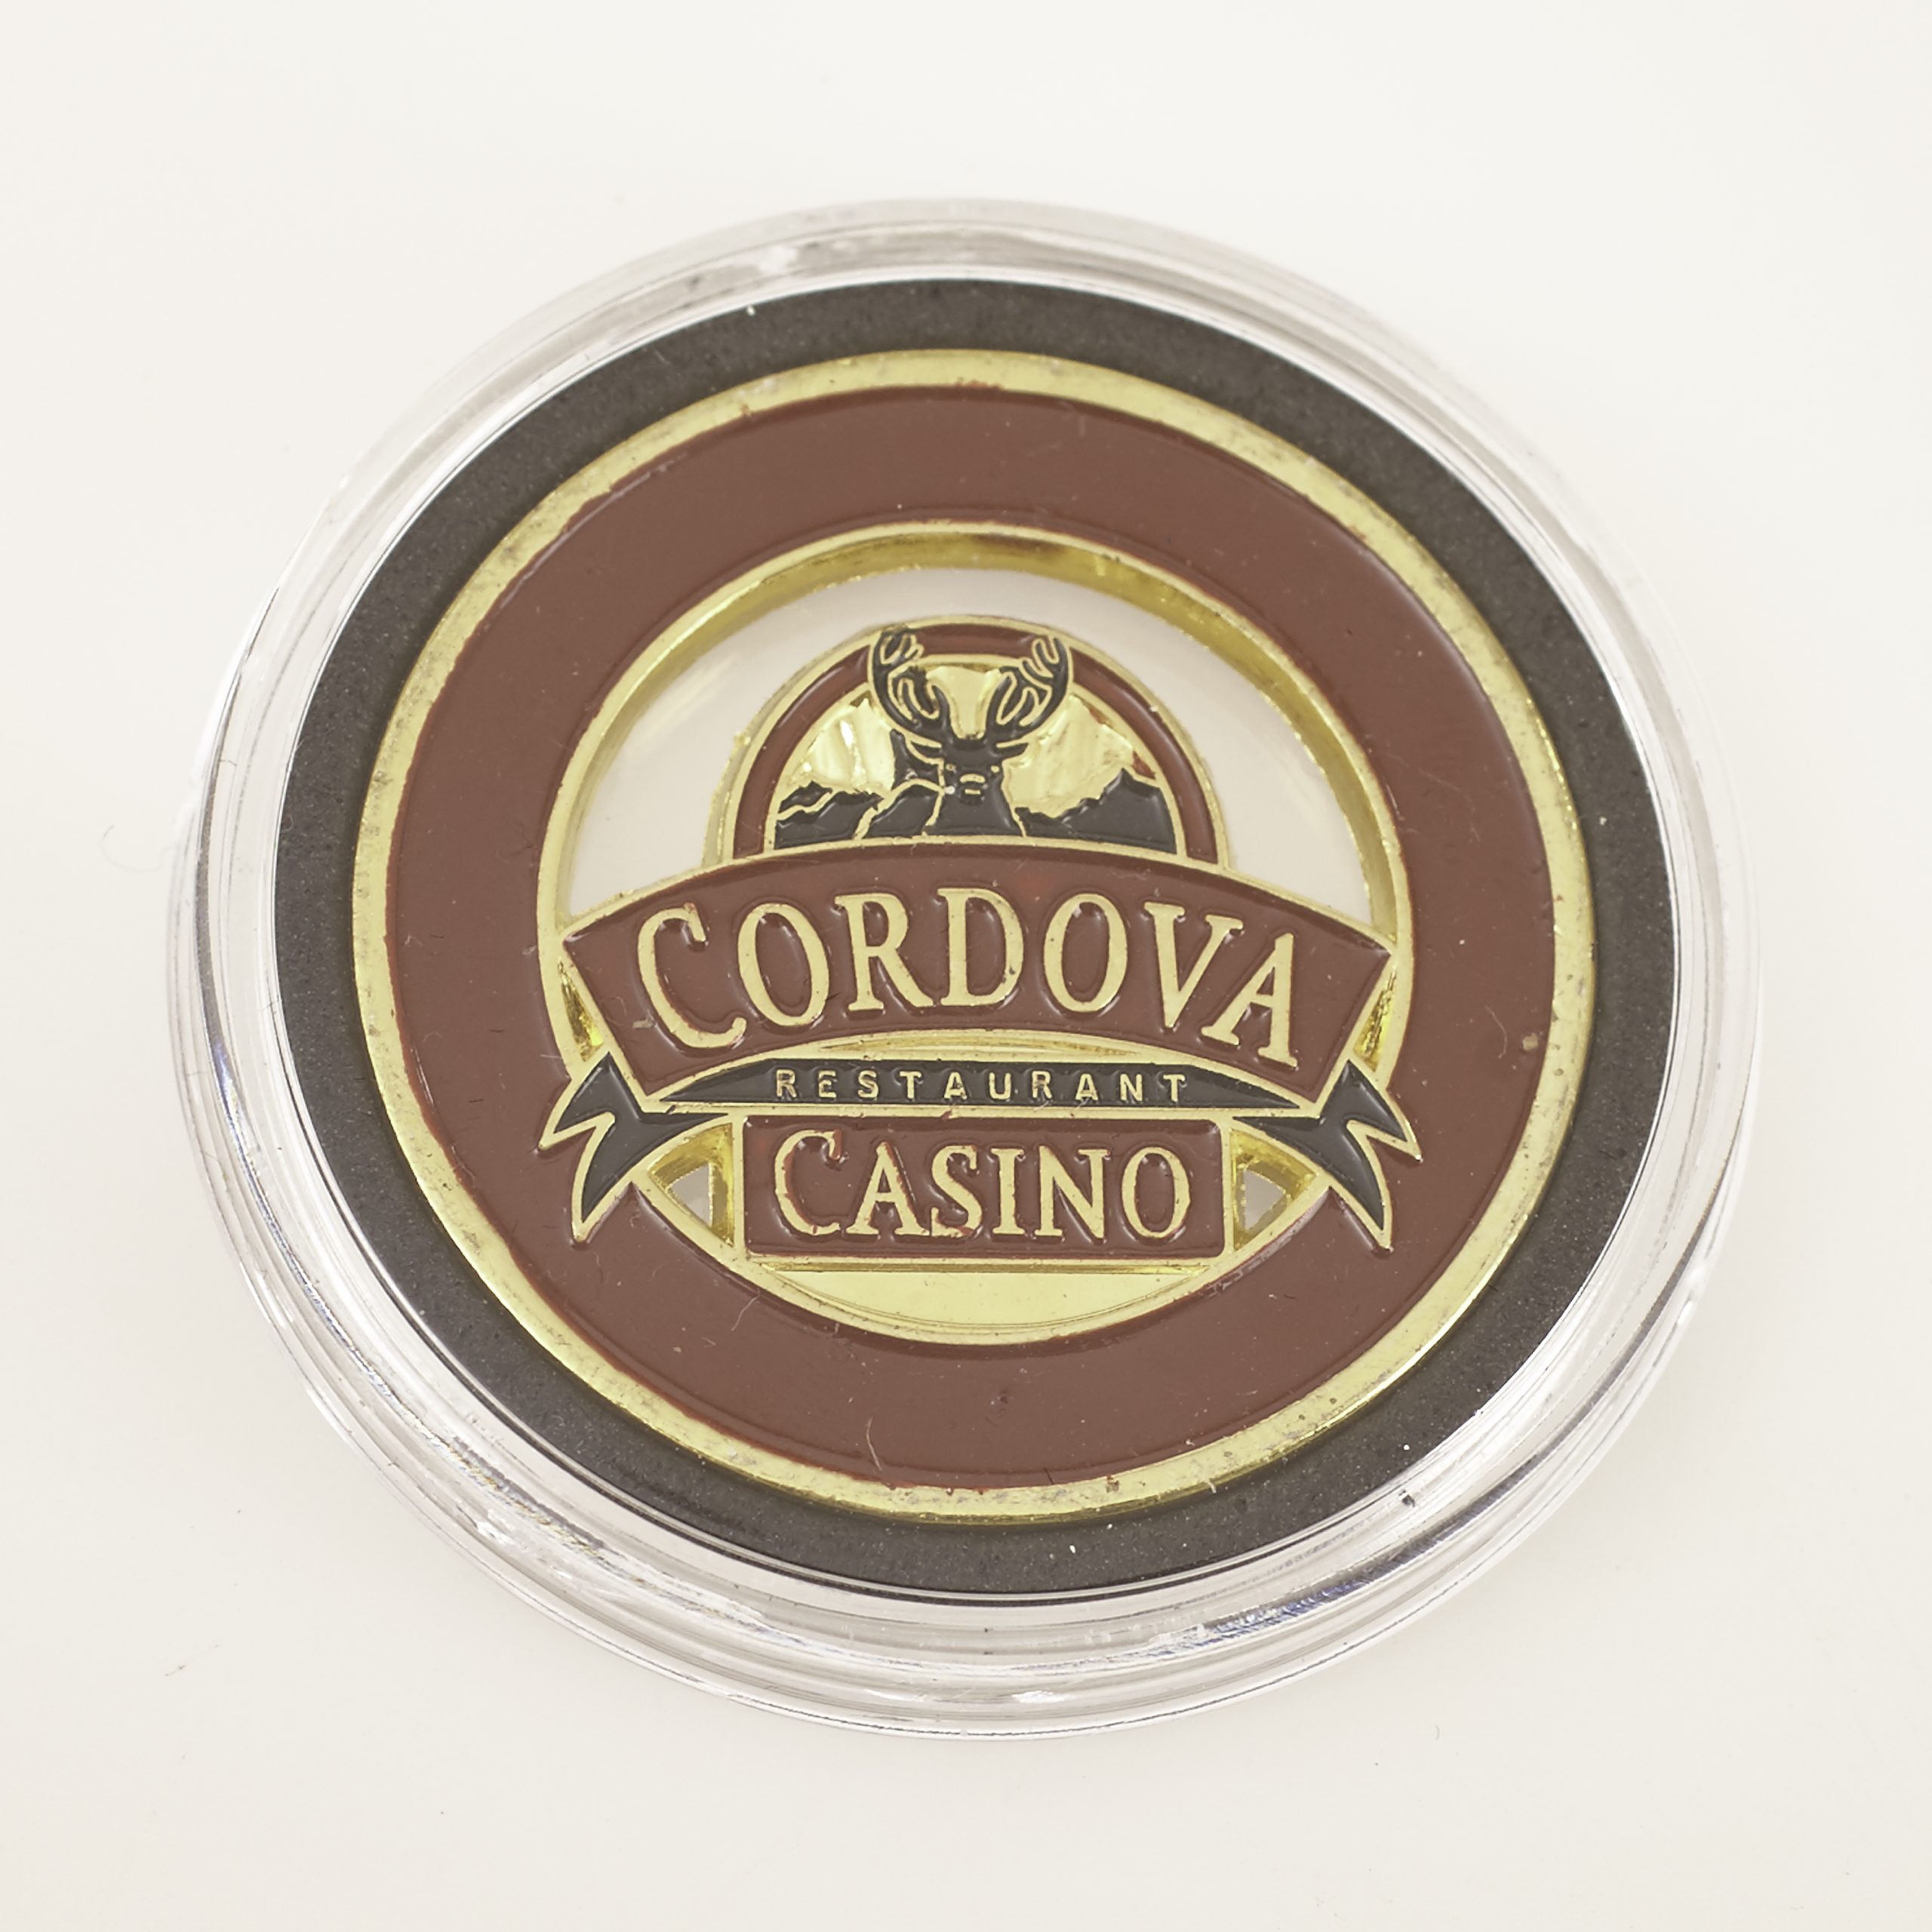 CORDOVA Casino, Poker Card Guard